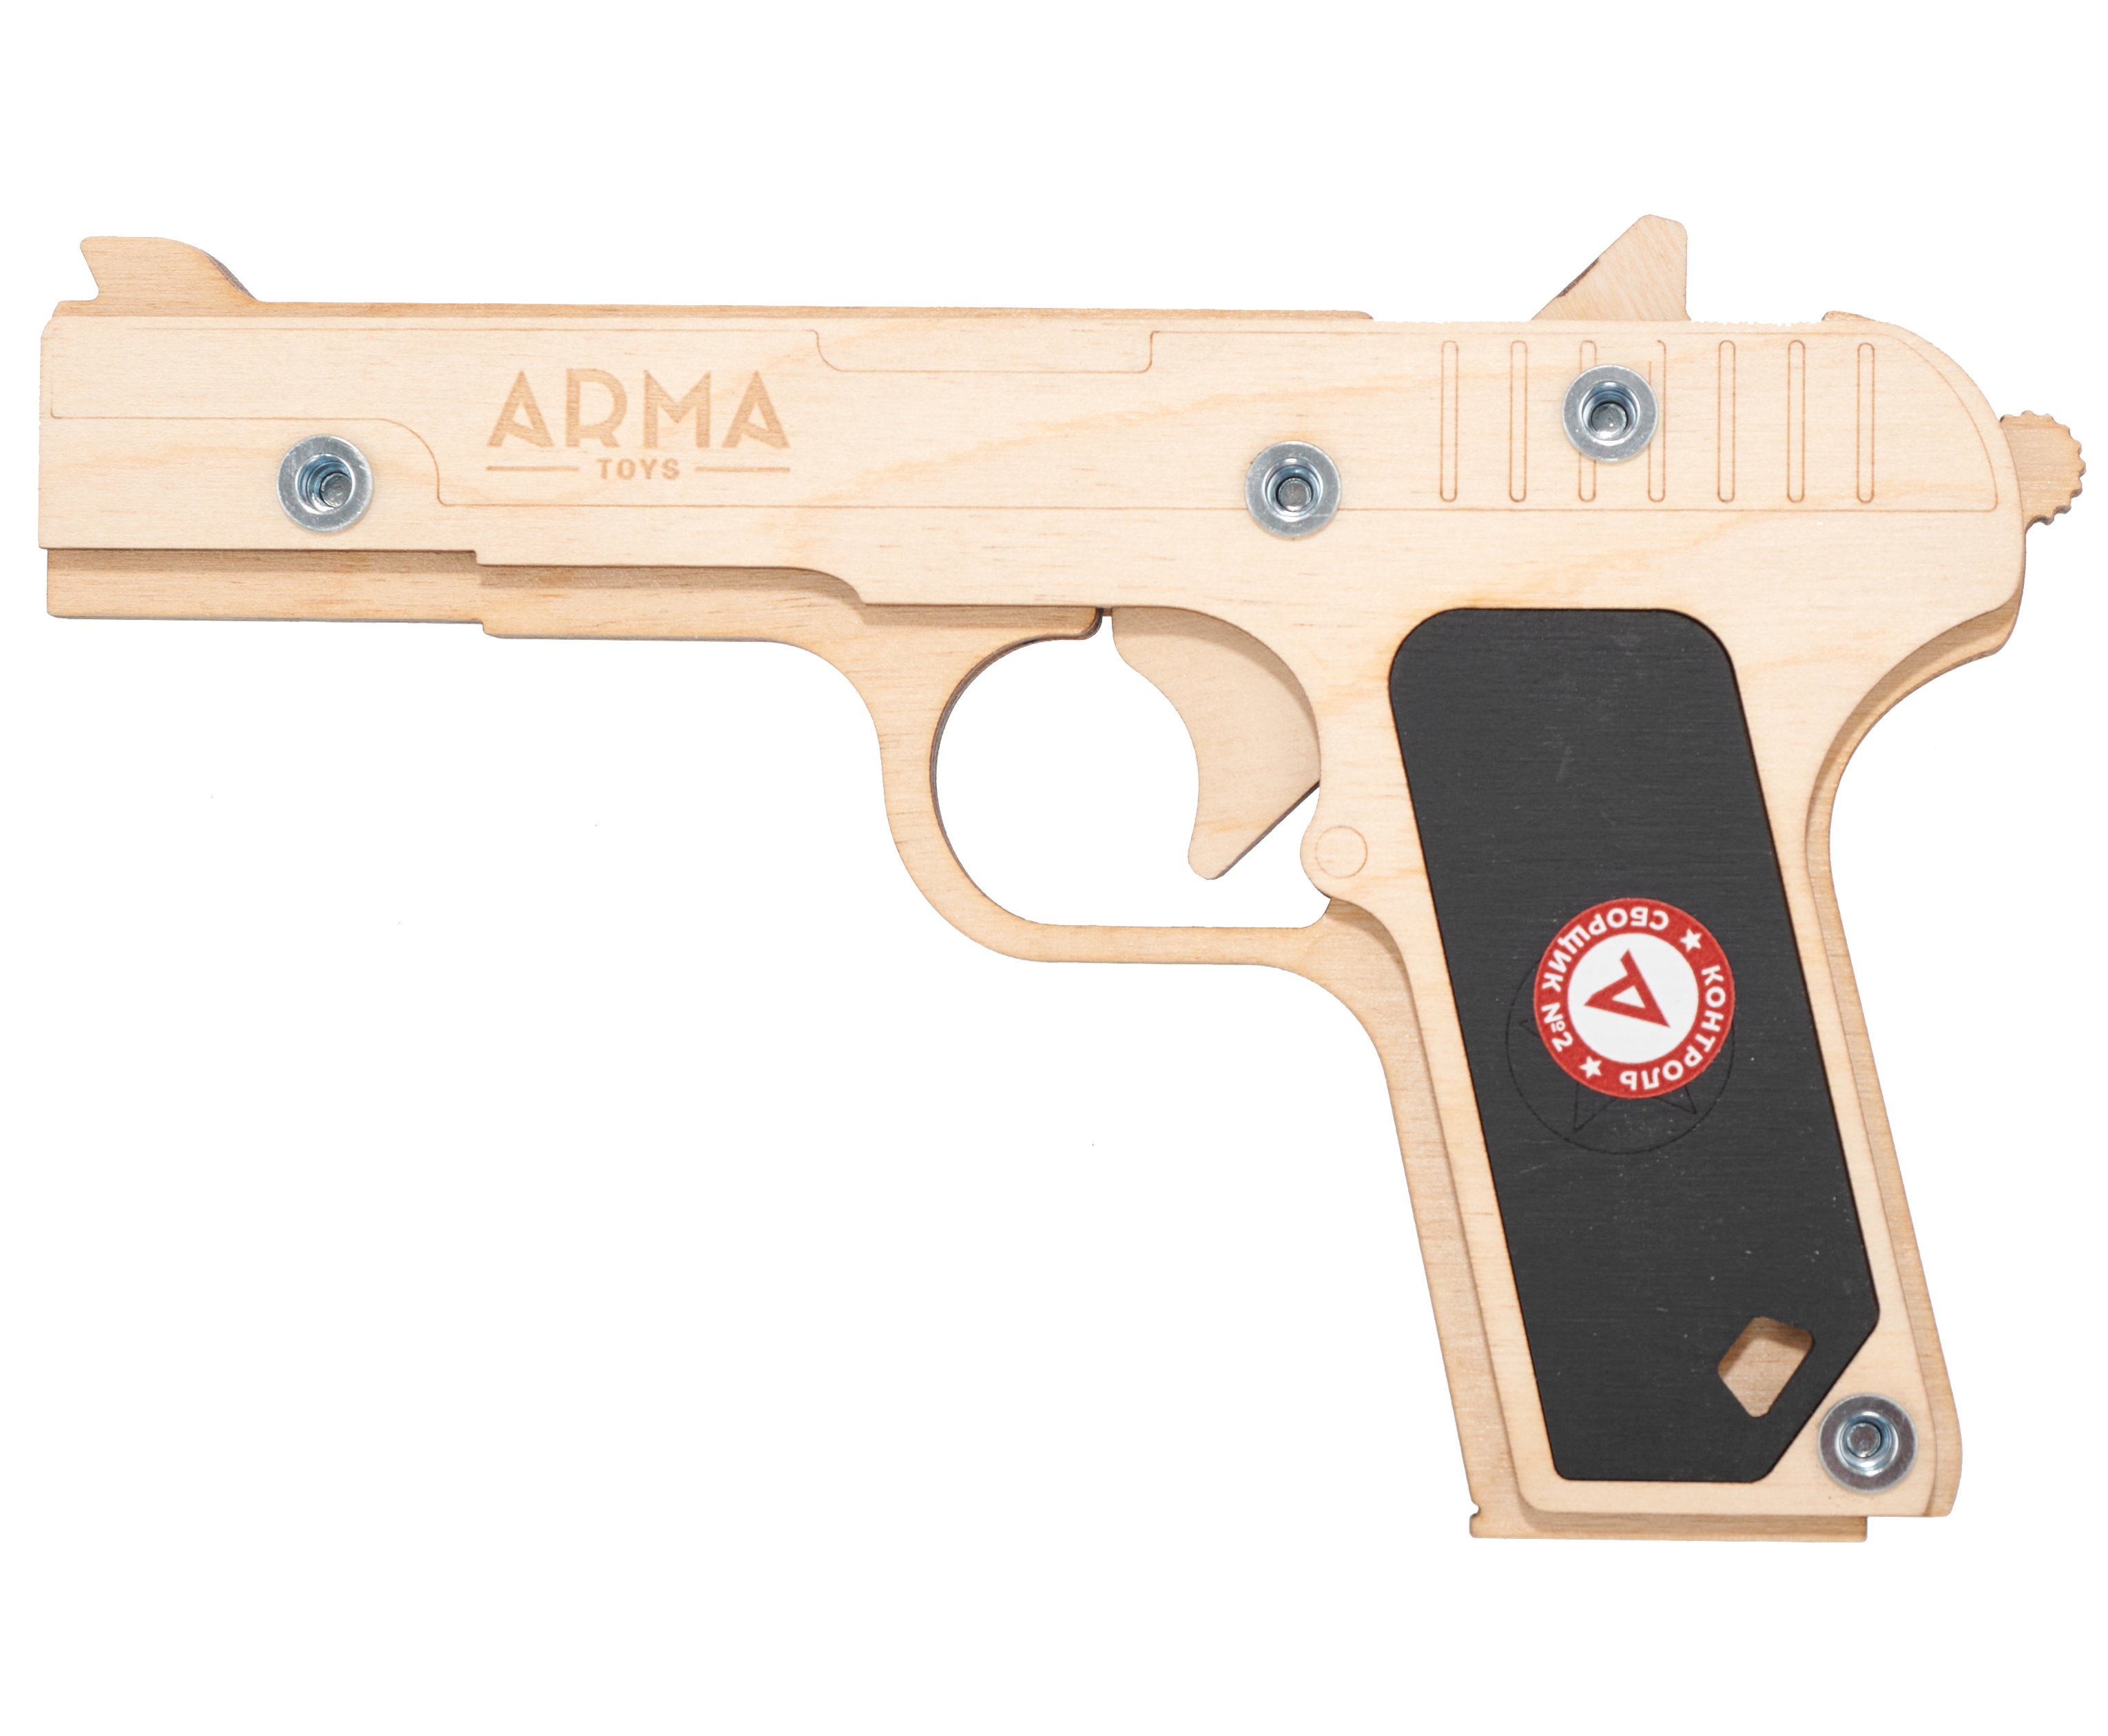 Резинкострел игрушечный Arma toys пистолет ТТ Компакт макет, Токарев, ATL002 резинкострел игрушечный arma toys пистолет glock макет compact atl001